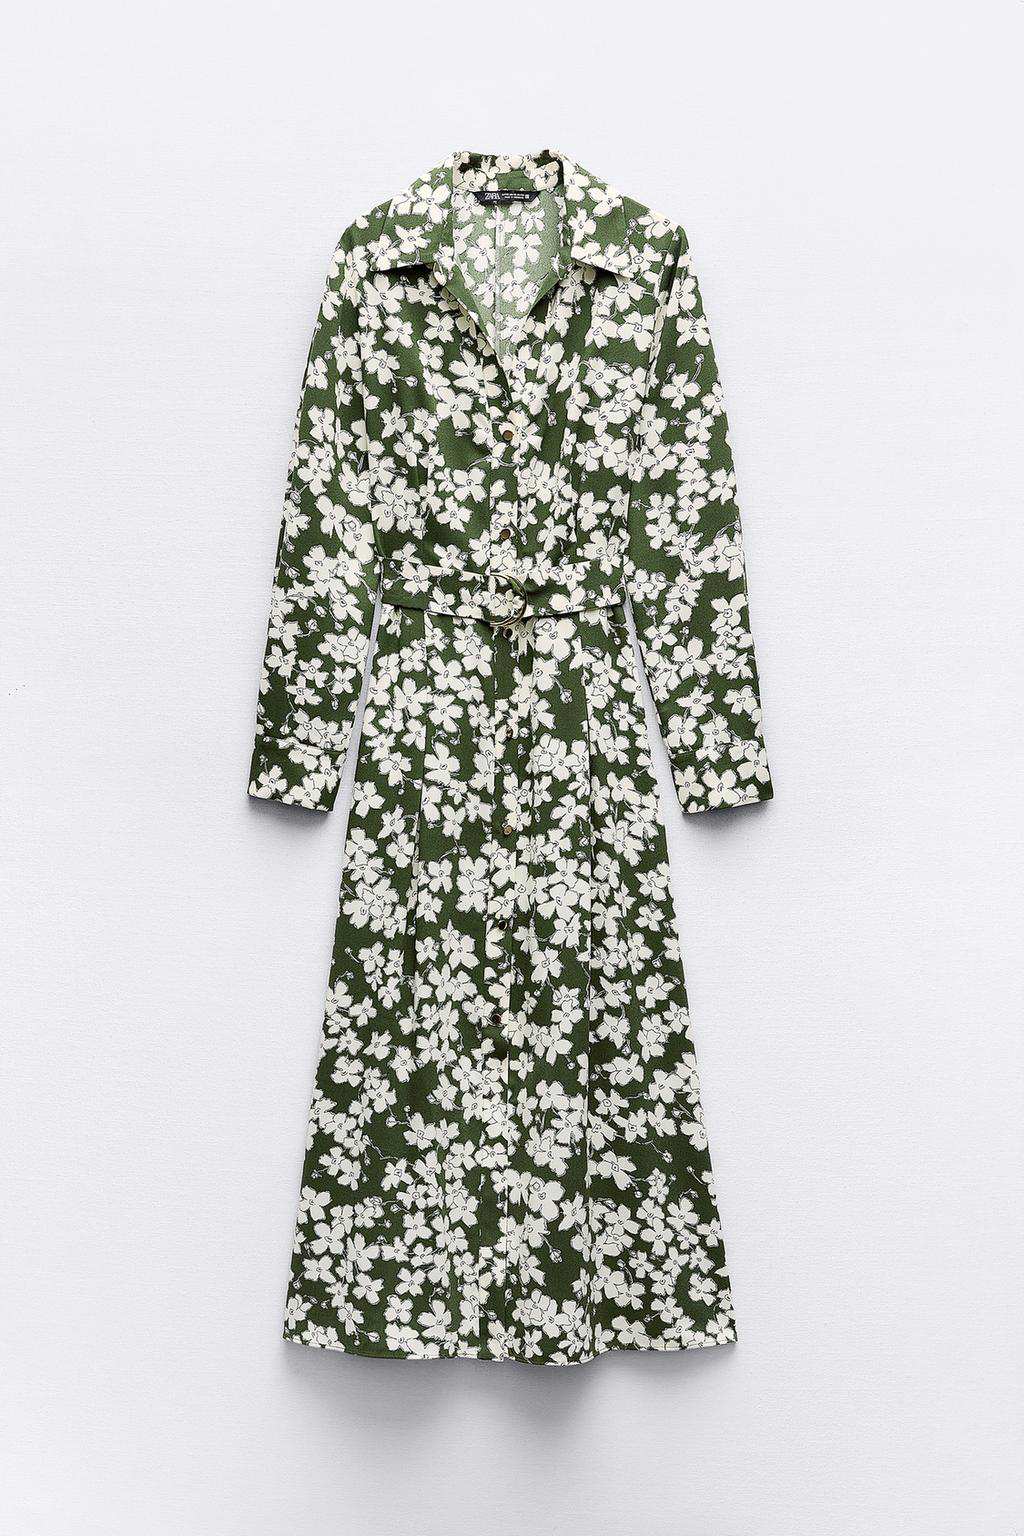 Vestido camisero estampado floral de Zara 45,95 euros